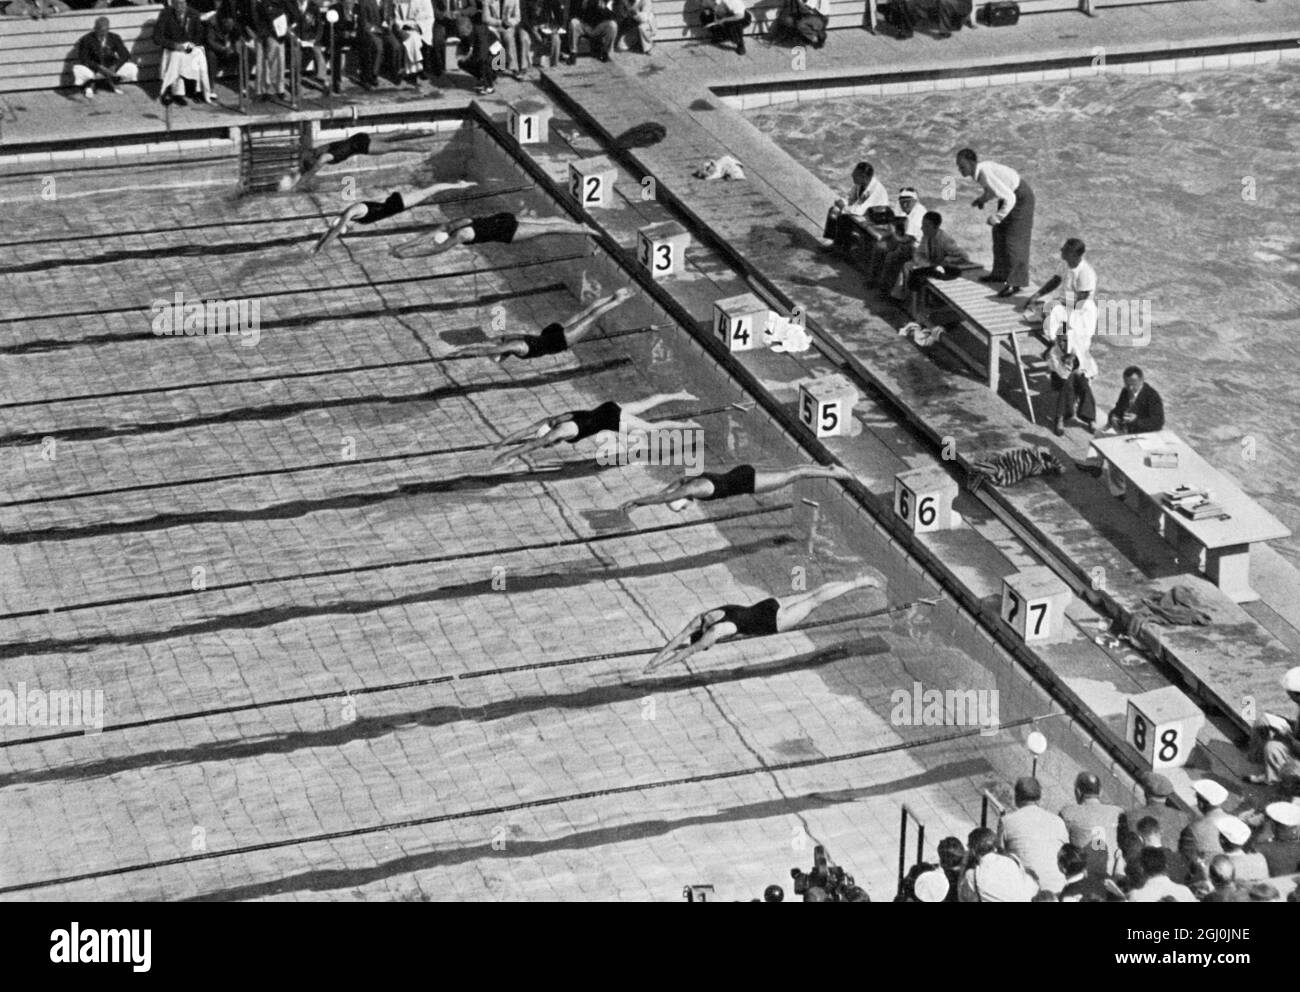 Olimpiadi del 1936, Berlino - un meraviglioso inizio della lotta finale del nuoto freestyle femminile di 100 m. Ria Mastenbroek (medaglia d'oro per i Paesi Bassi) è primo del blocco (corsia n. 5). (Ein wunderbares Startbid vom Endkampf der Frauen im 100 m Freistillschwimmen. Vom Vlock Nr. 5 startet Ria Mastenbroek.) ©TopFoto Foto Stock